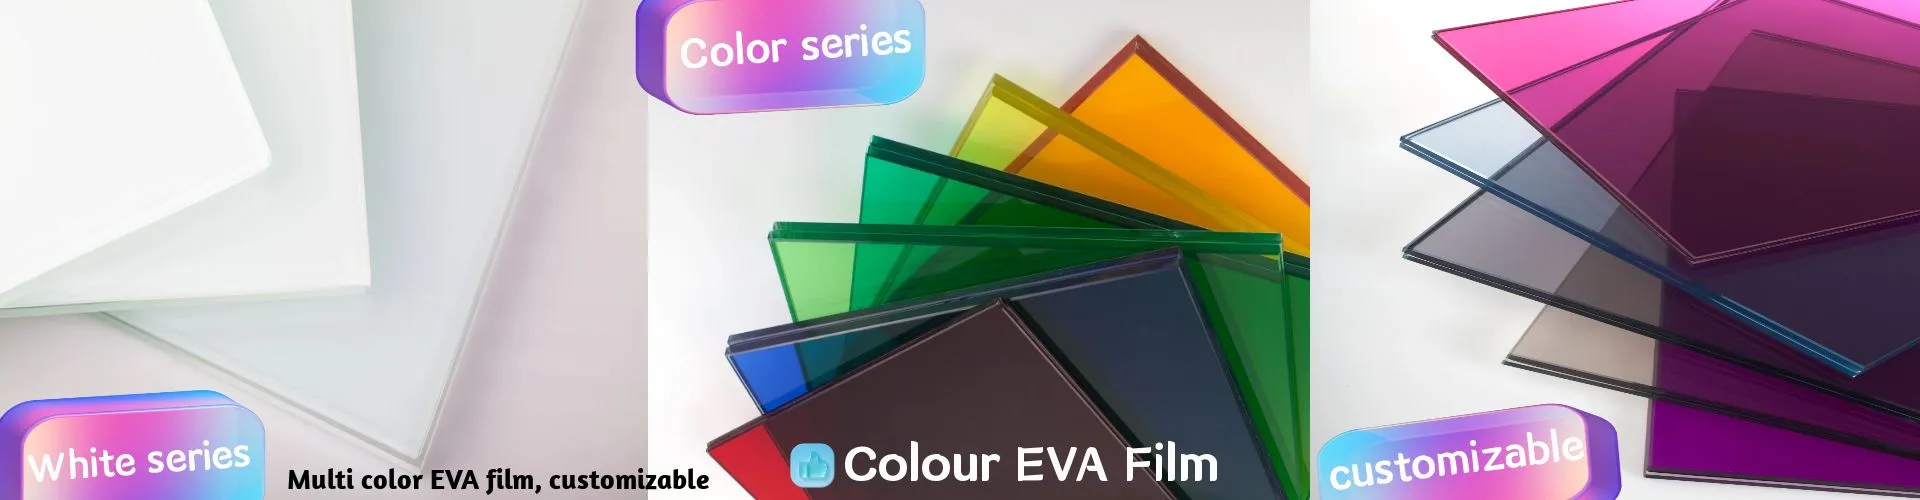 Color EVA Film